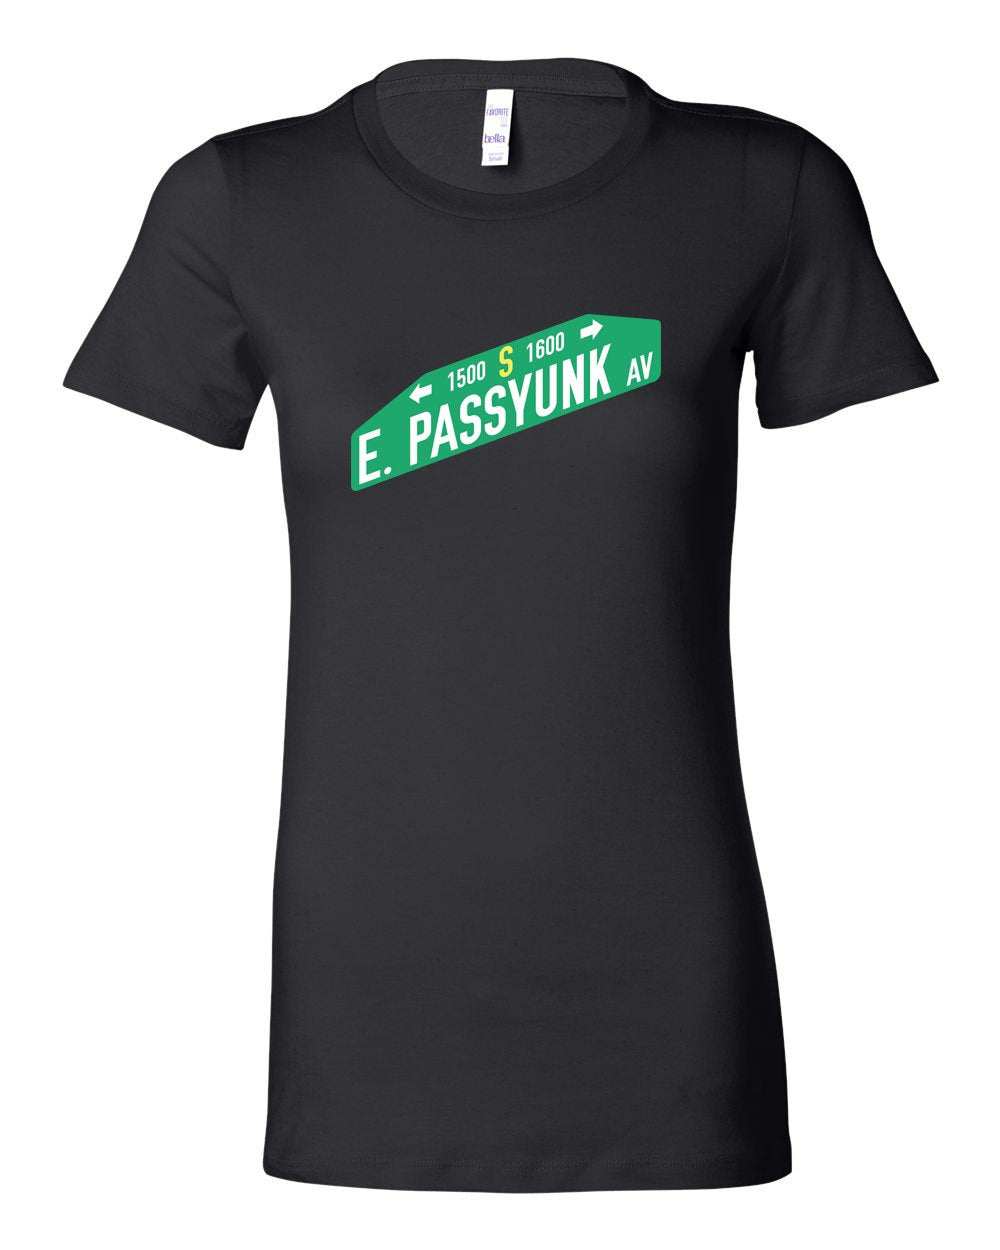 East Passyunk LADIES Junior-Fit T-Shirt